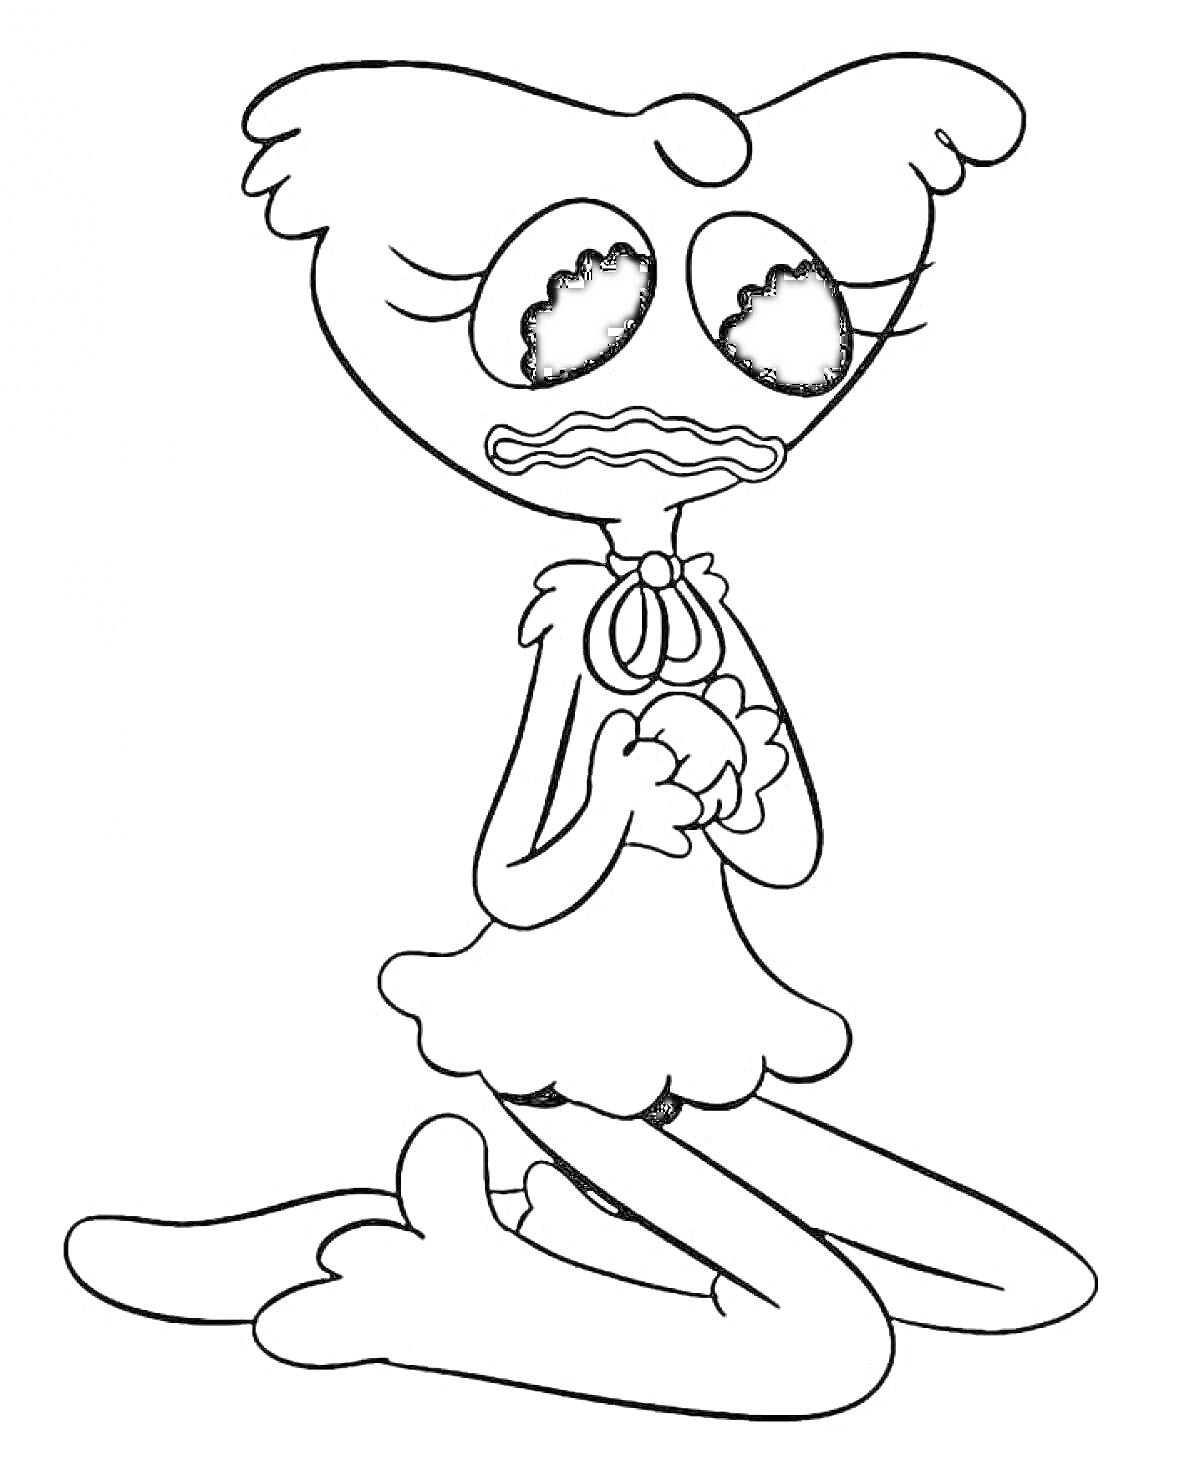 Раскраска Кисси Мисси на коленях с грустным выражением лица, руки сжаты в кулаки перед грудью